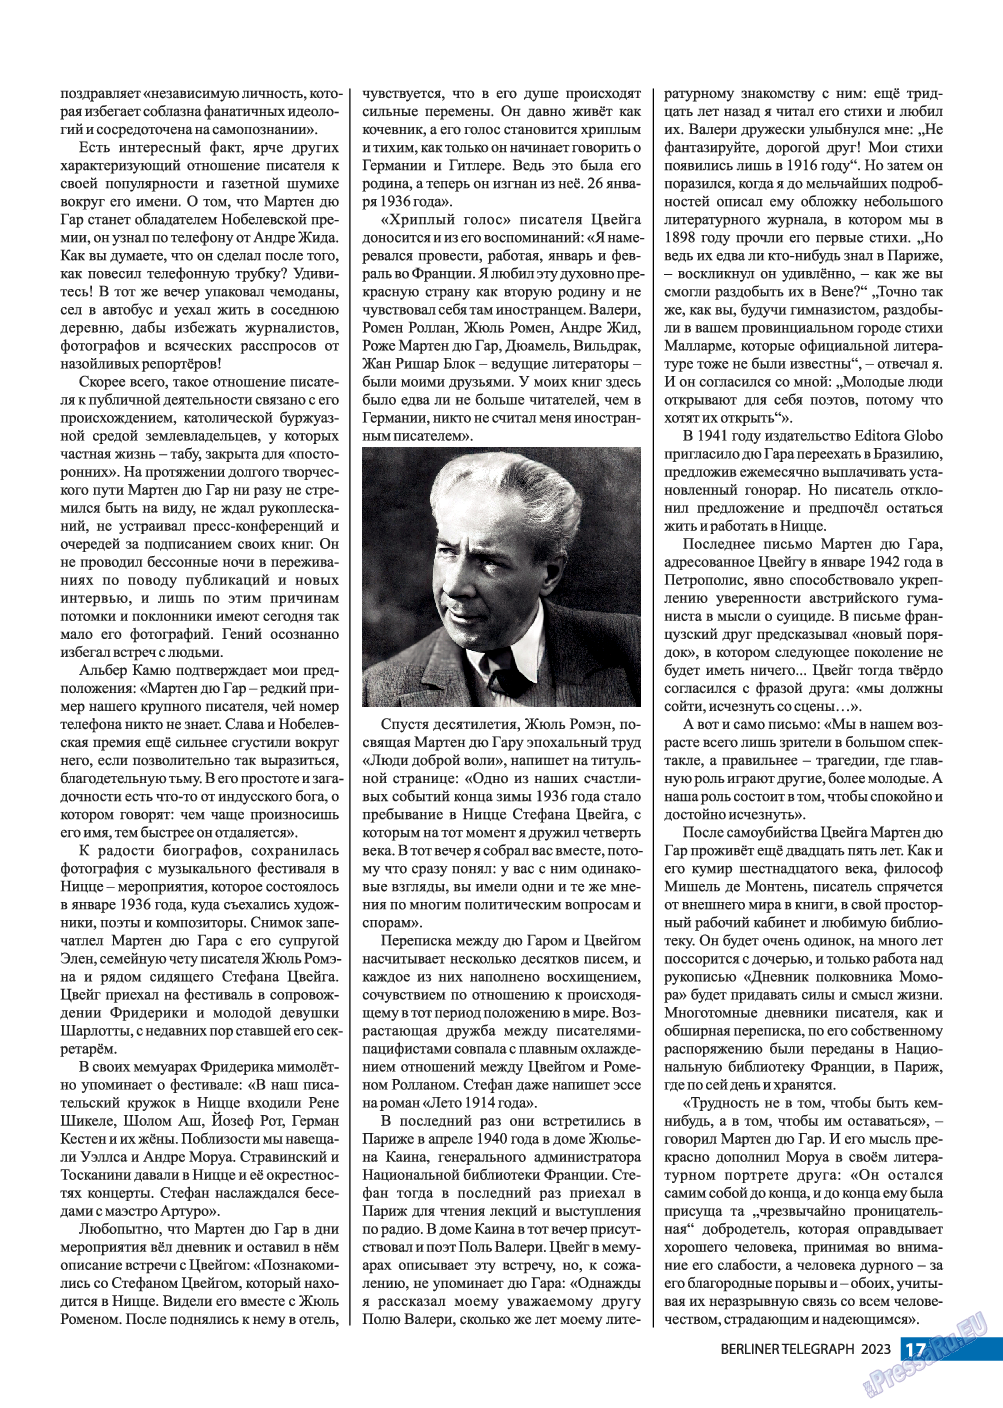 Берлинский телеграф, журнал. 2023 №3 стр.17